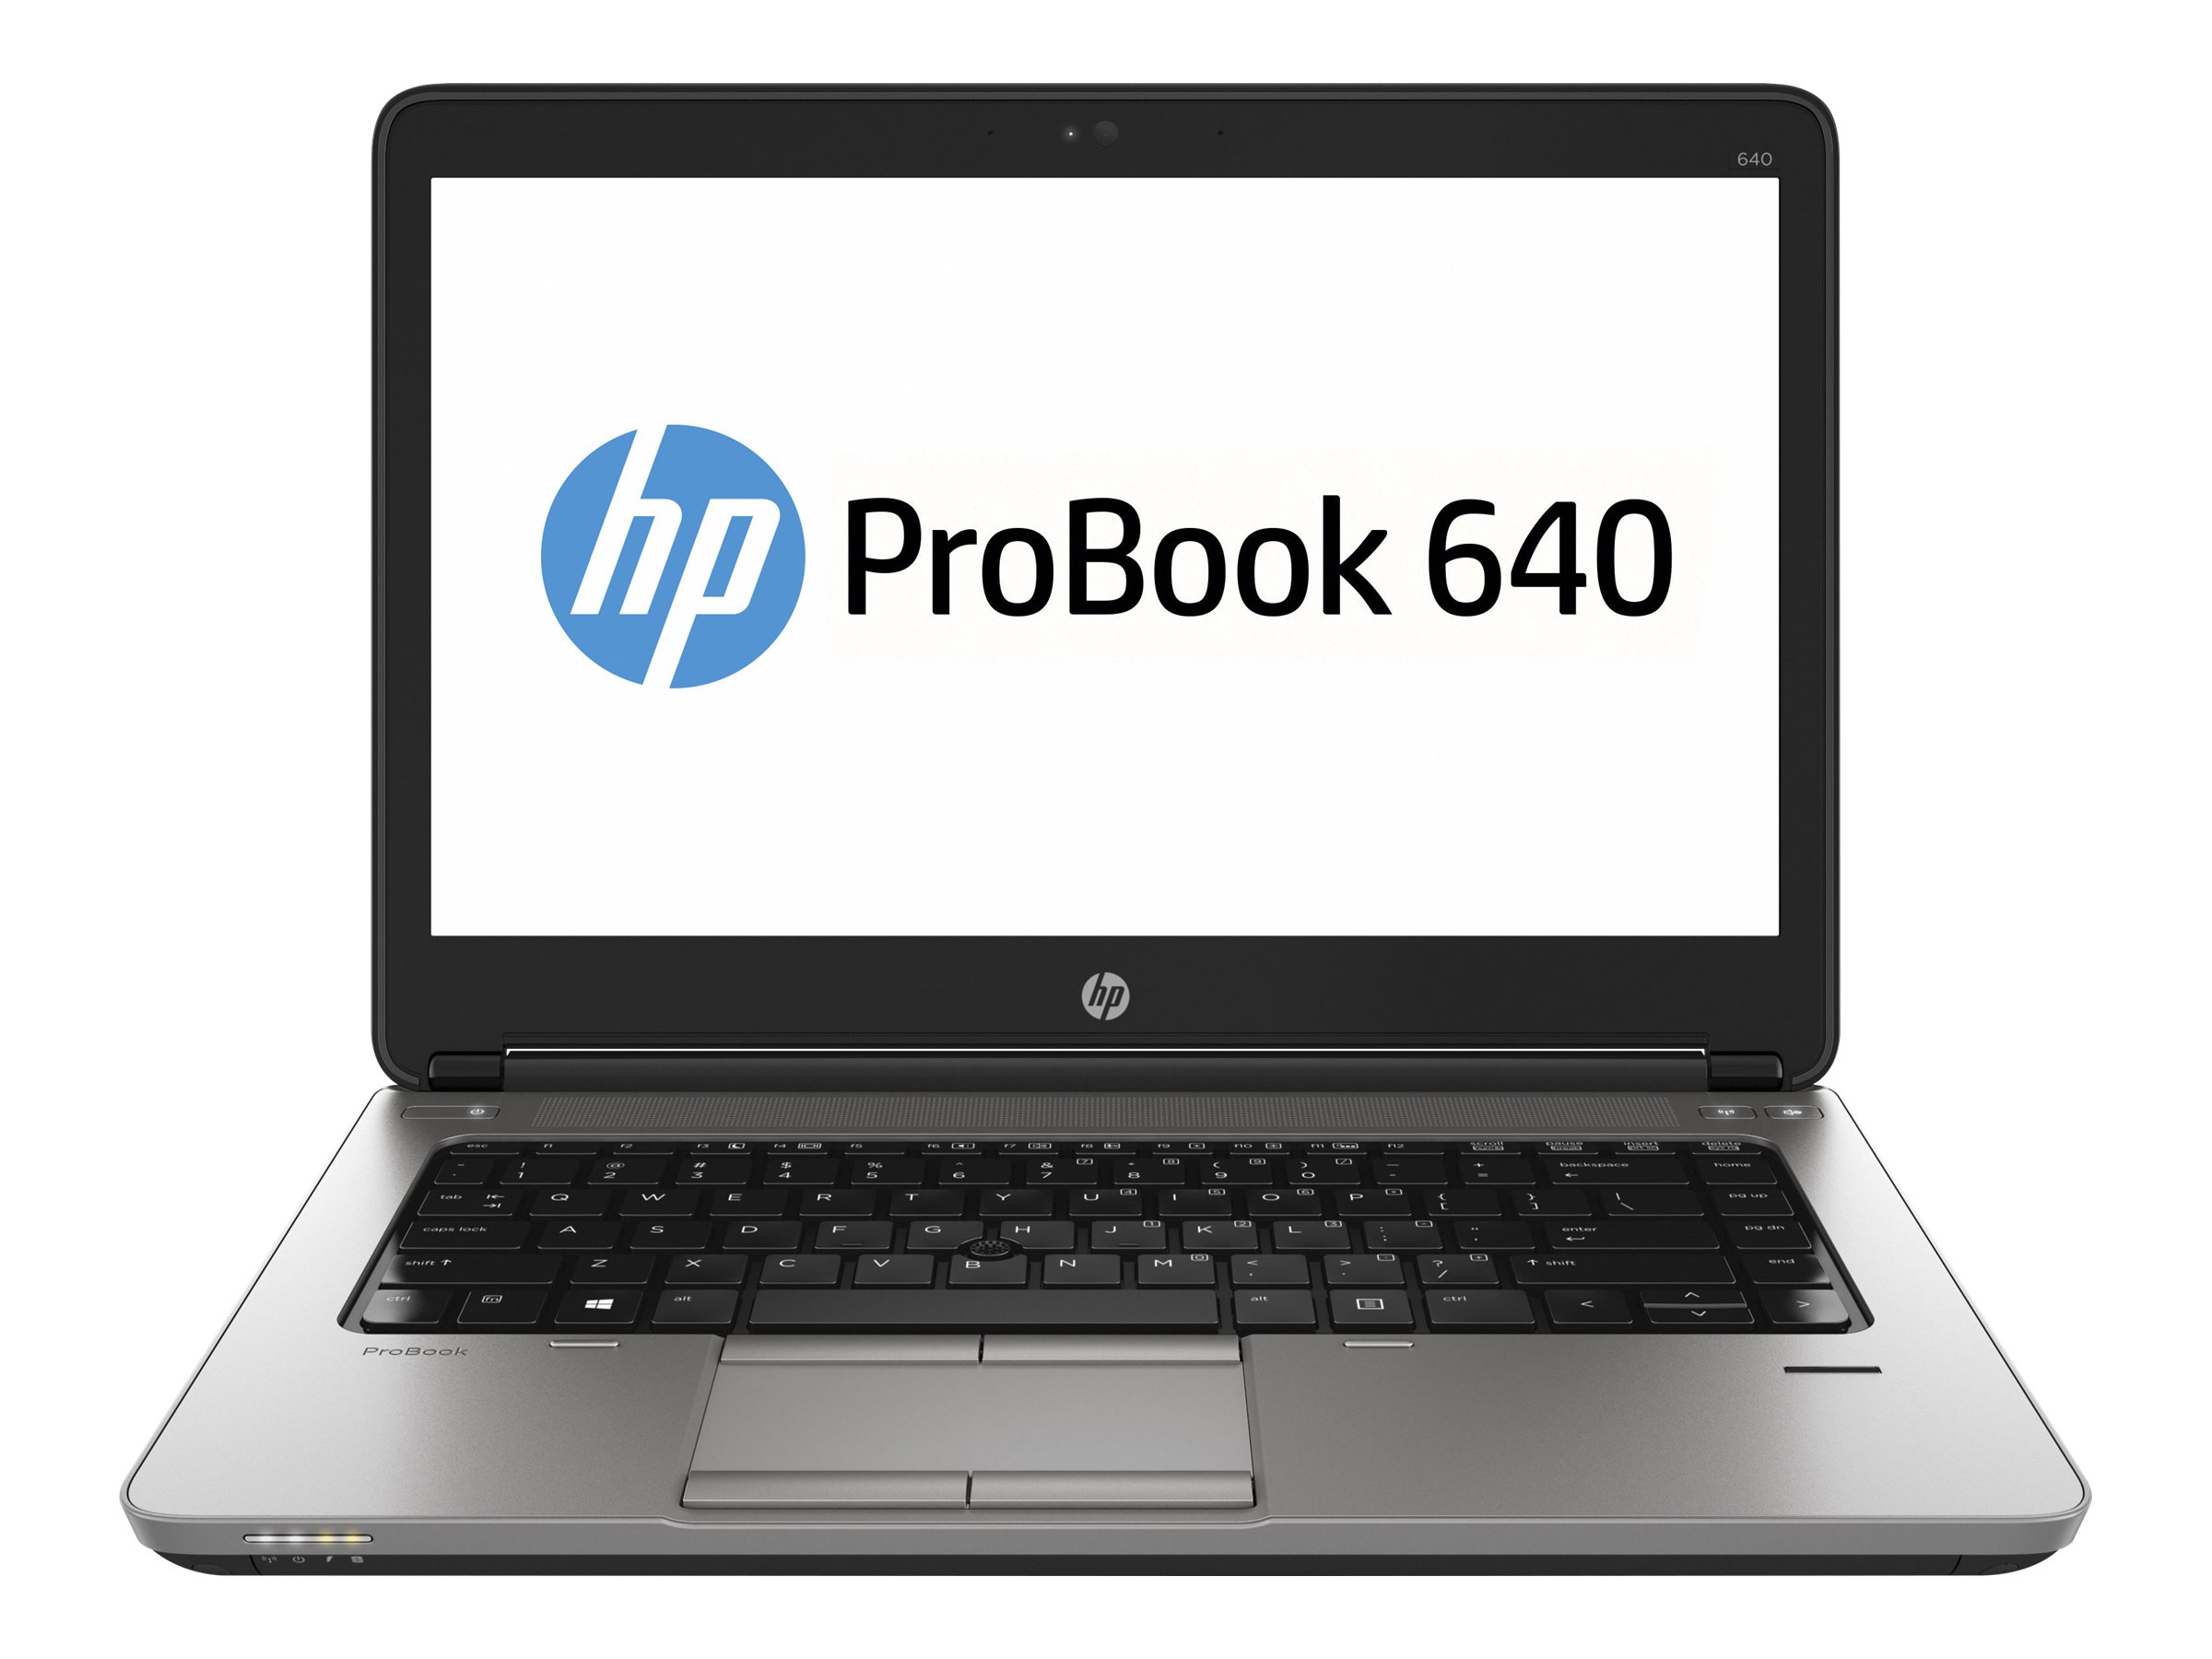 Hp ProBook 640 -Intel Core i3, 4GB RAM, 500GB HDD, 14″ Display0